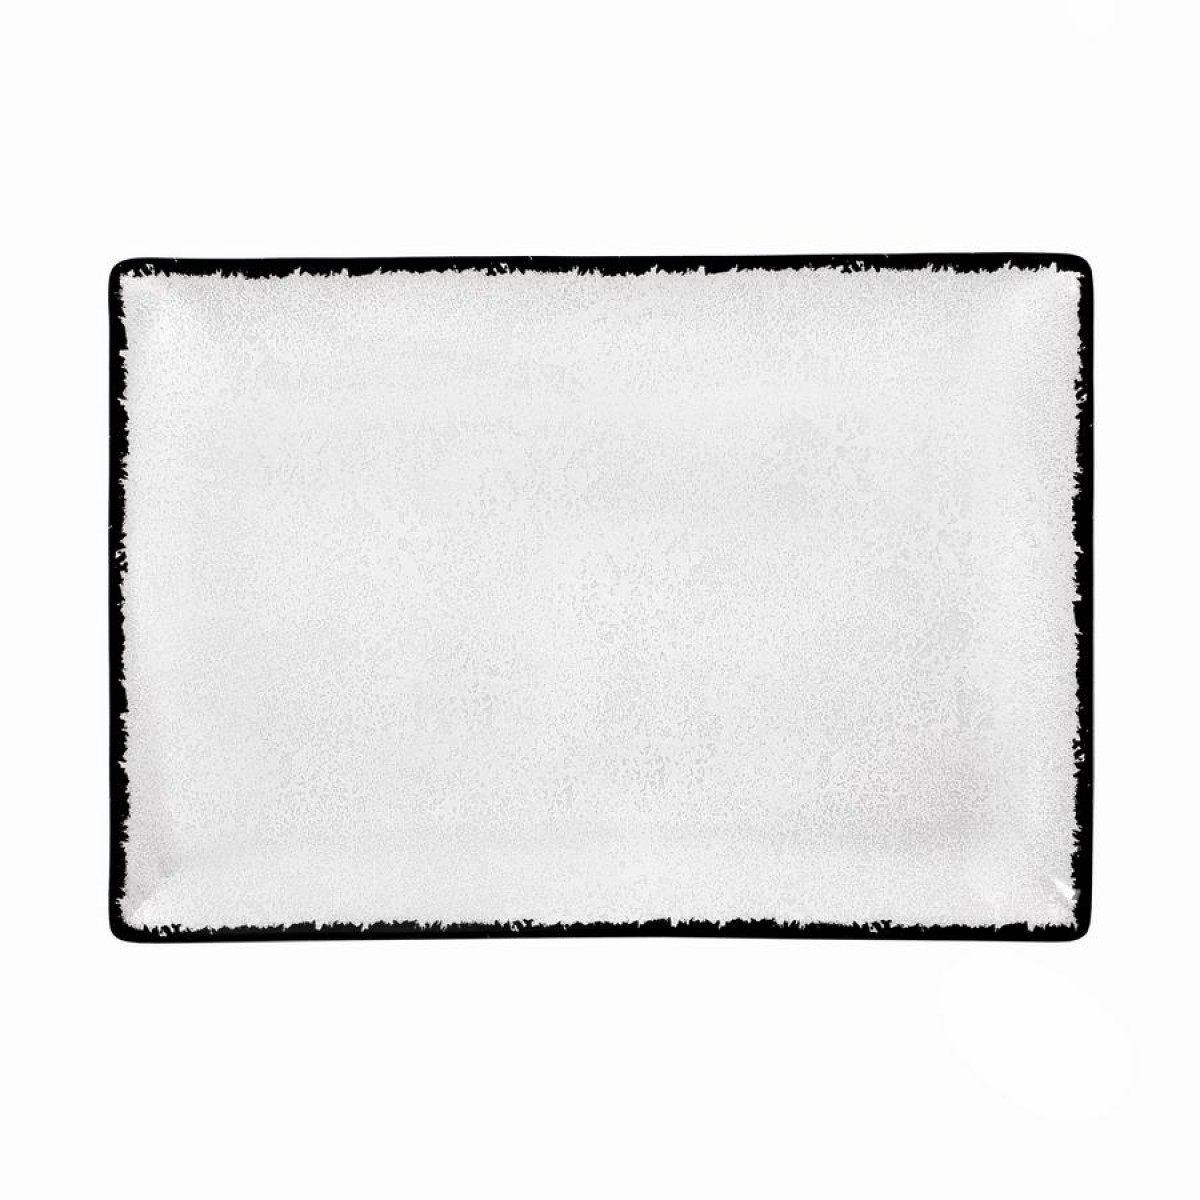 Πιατέλα Σερβιρίσματος Ορθογώνια 31x21cm Πορσελάνινη λευκό & γκρι χρώμα Oriana Ferelli Moon Shade PR182746321